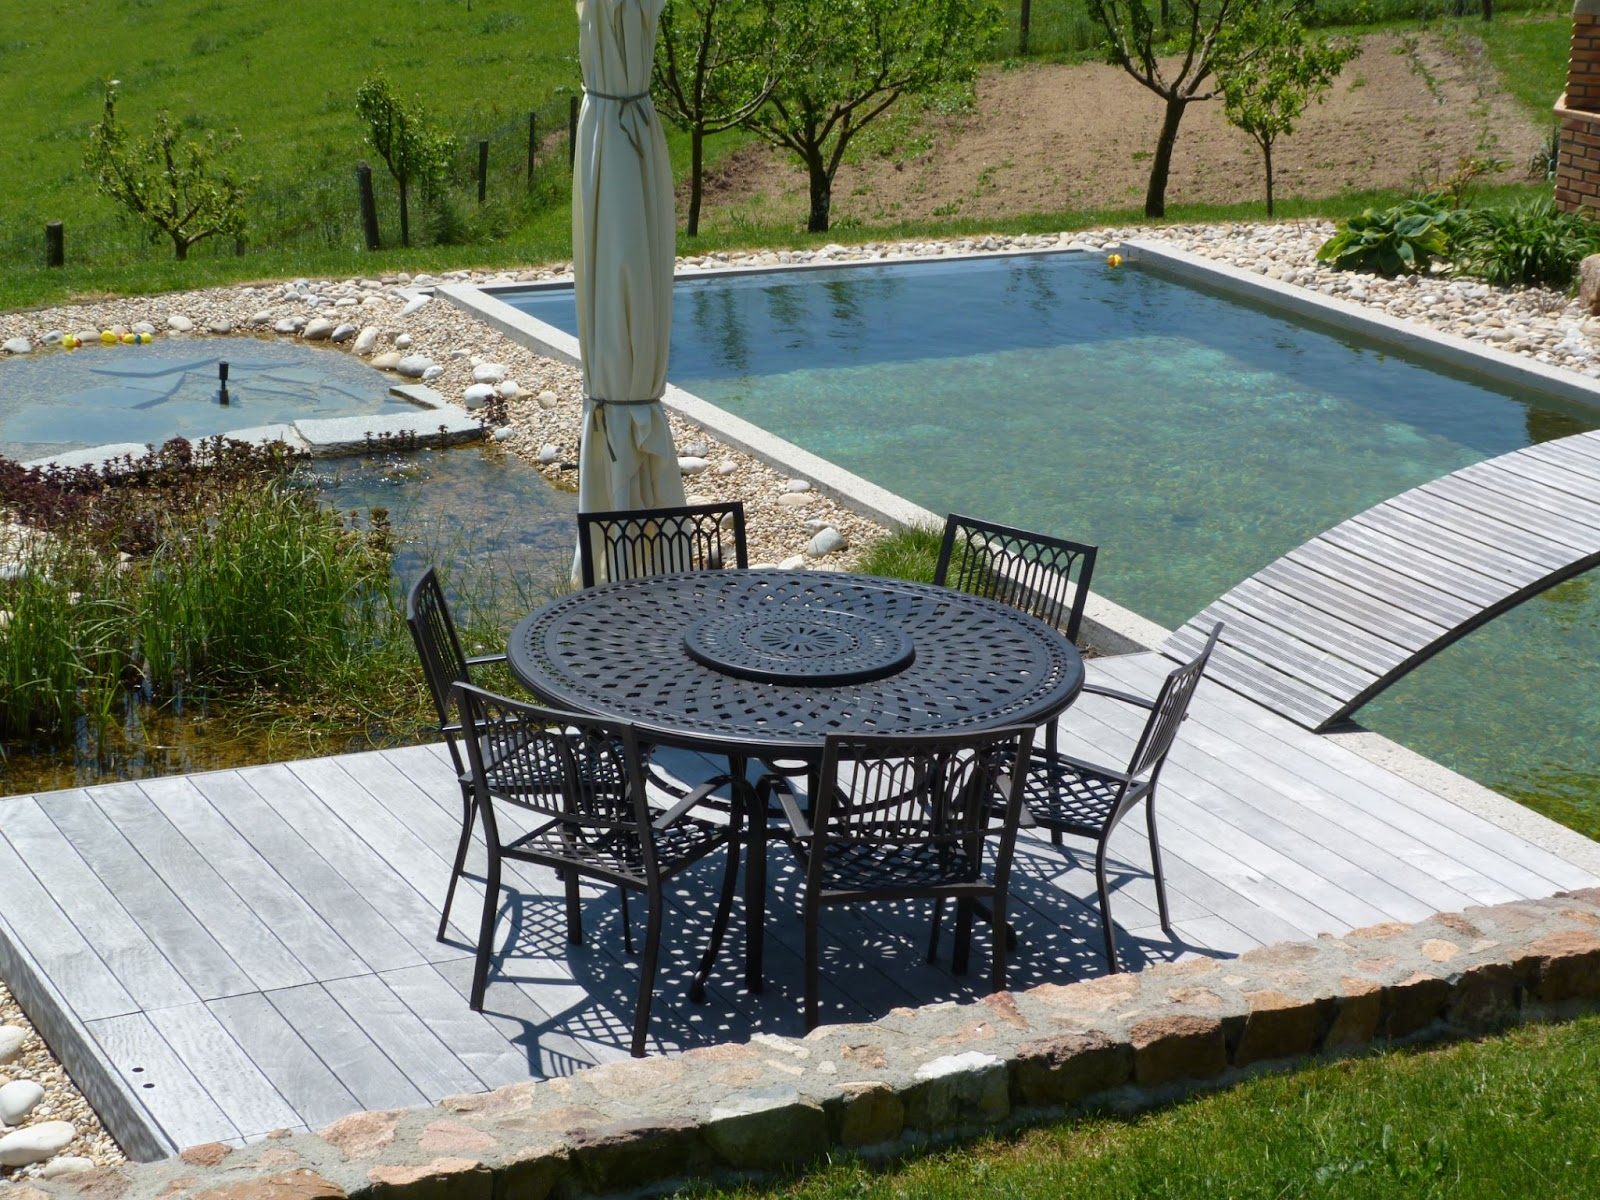 Schwarze Terrassenmöbel bestehend aus Gartentisch und Stühlen auf Terrasse neben Pool.